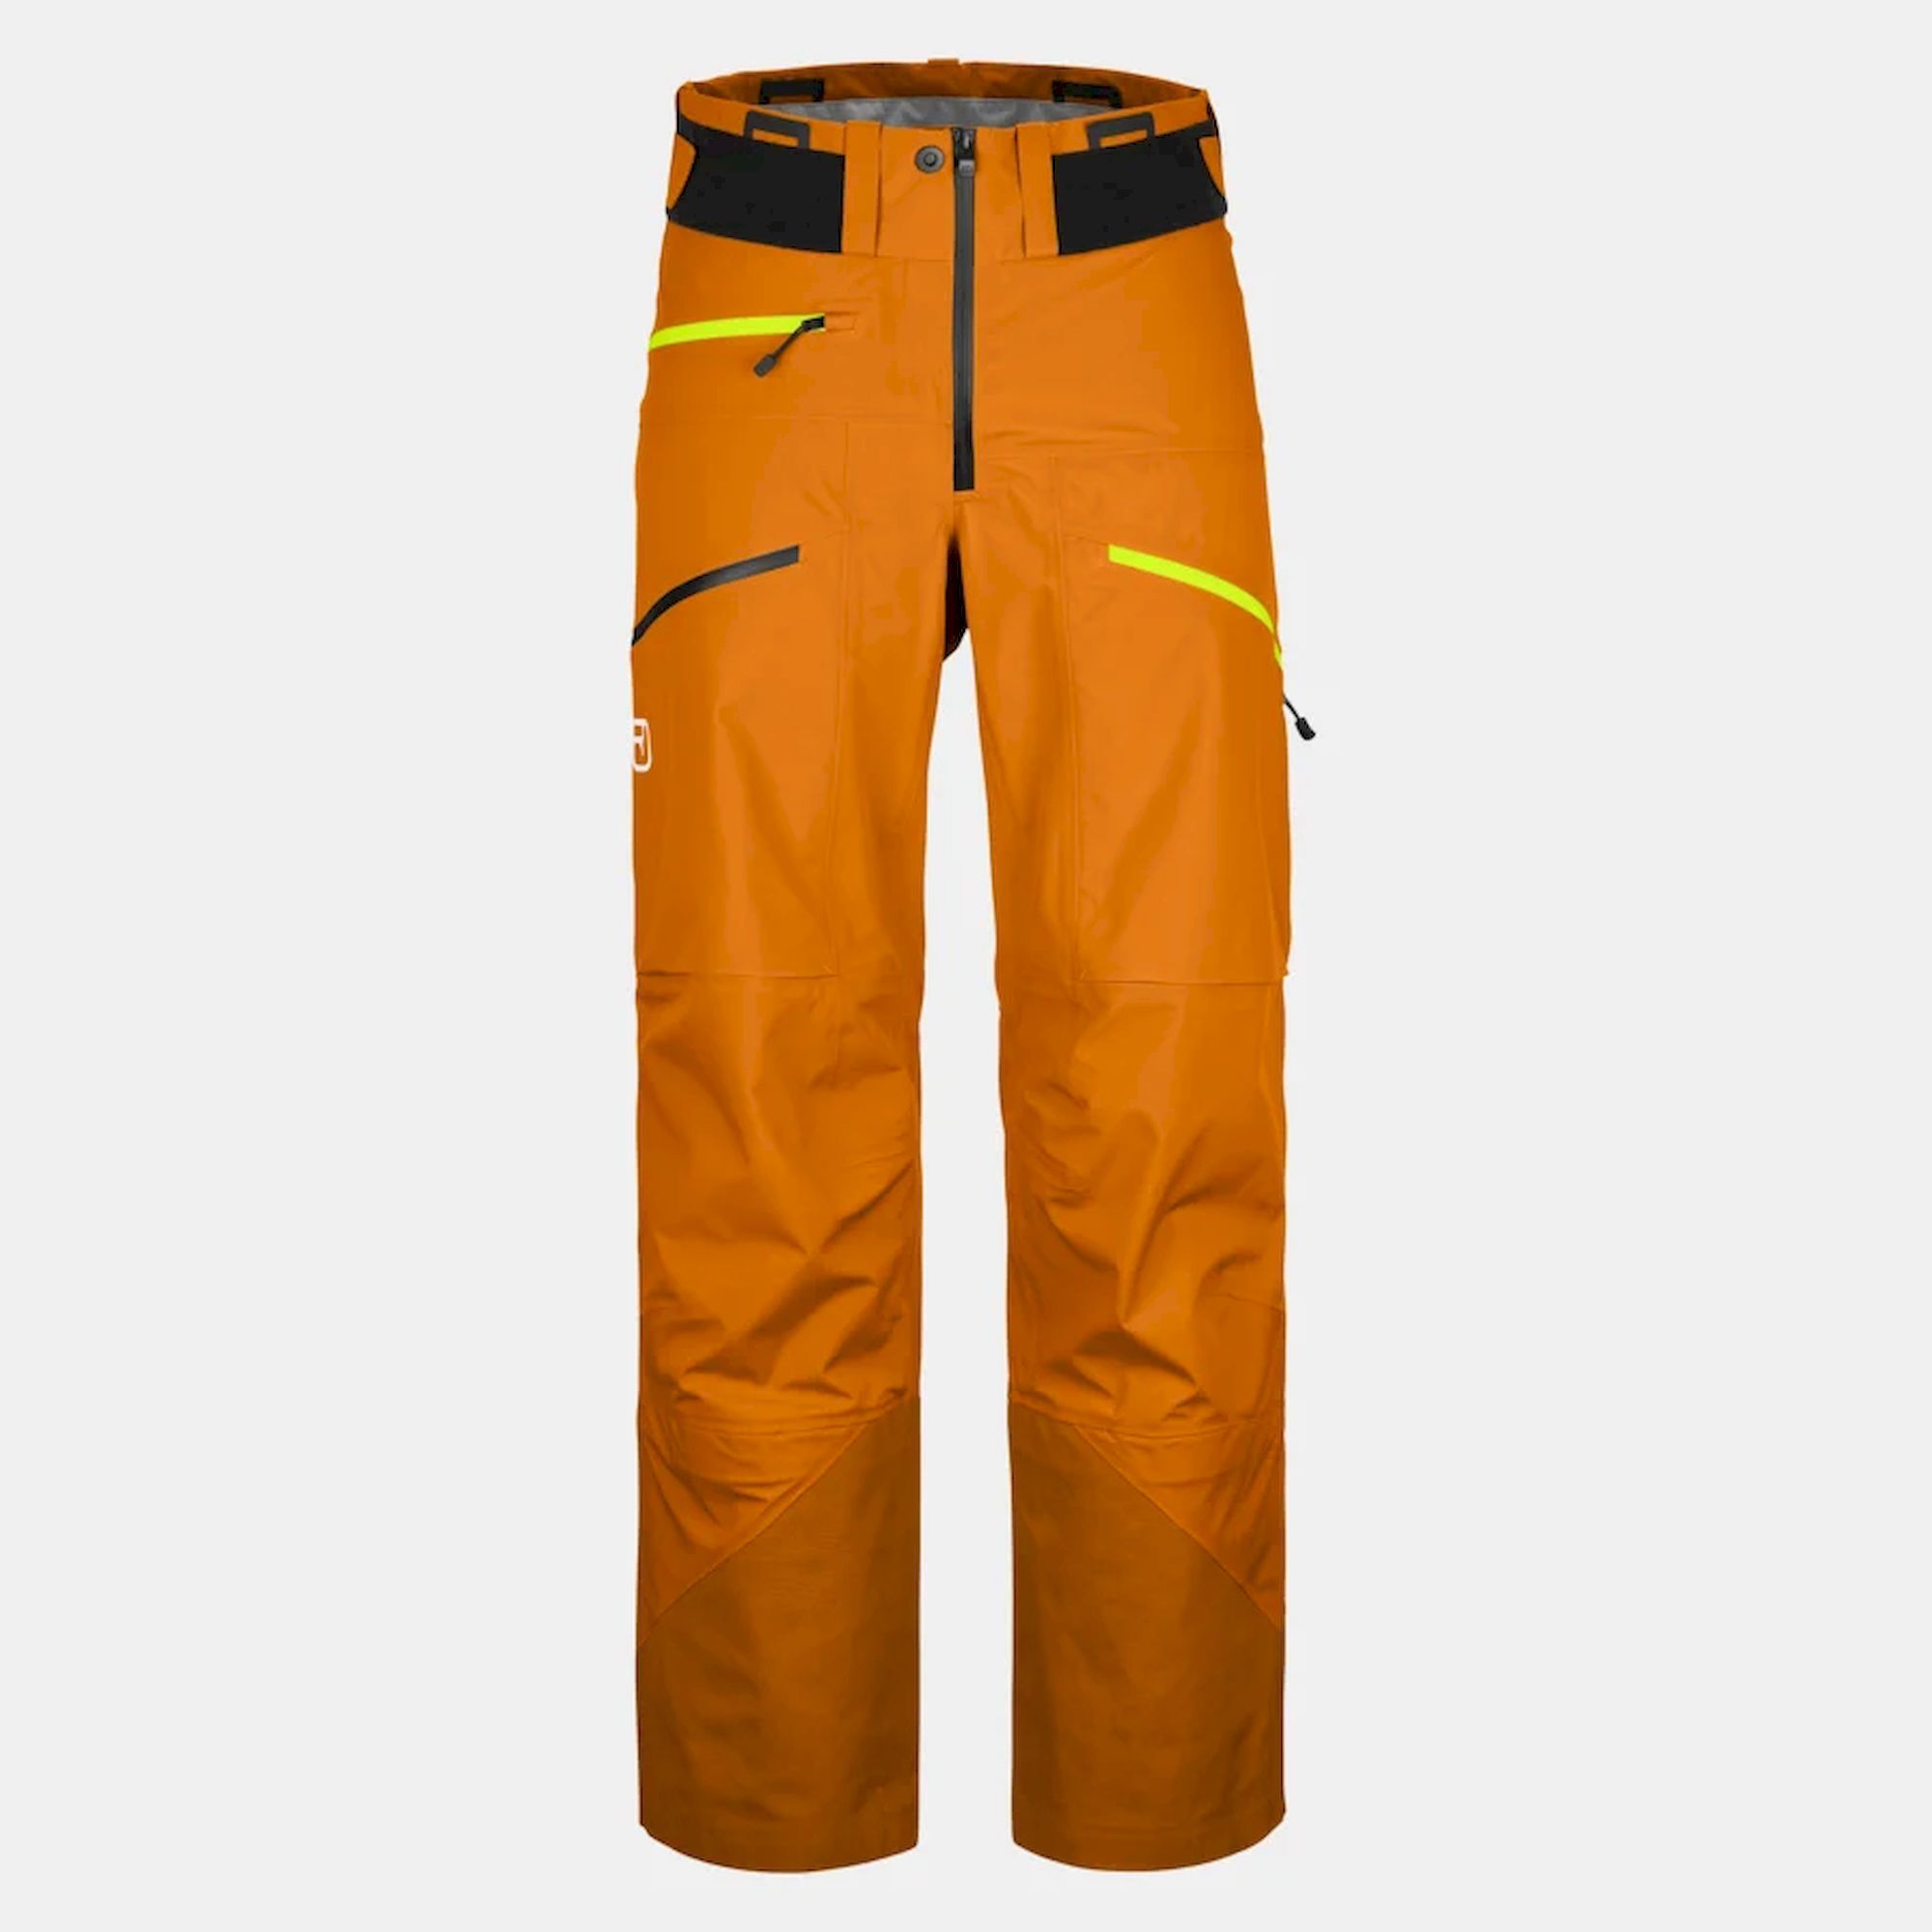 Ortovox 3L Deep Shell Pants - Ski pants - Men's